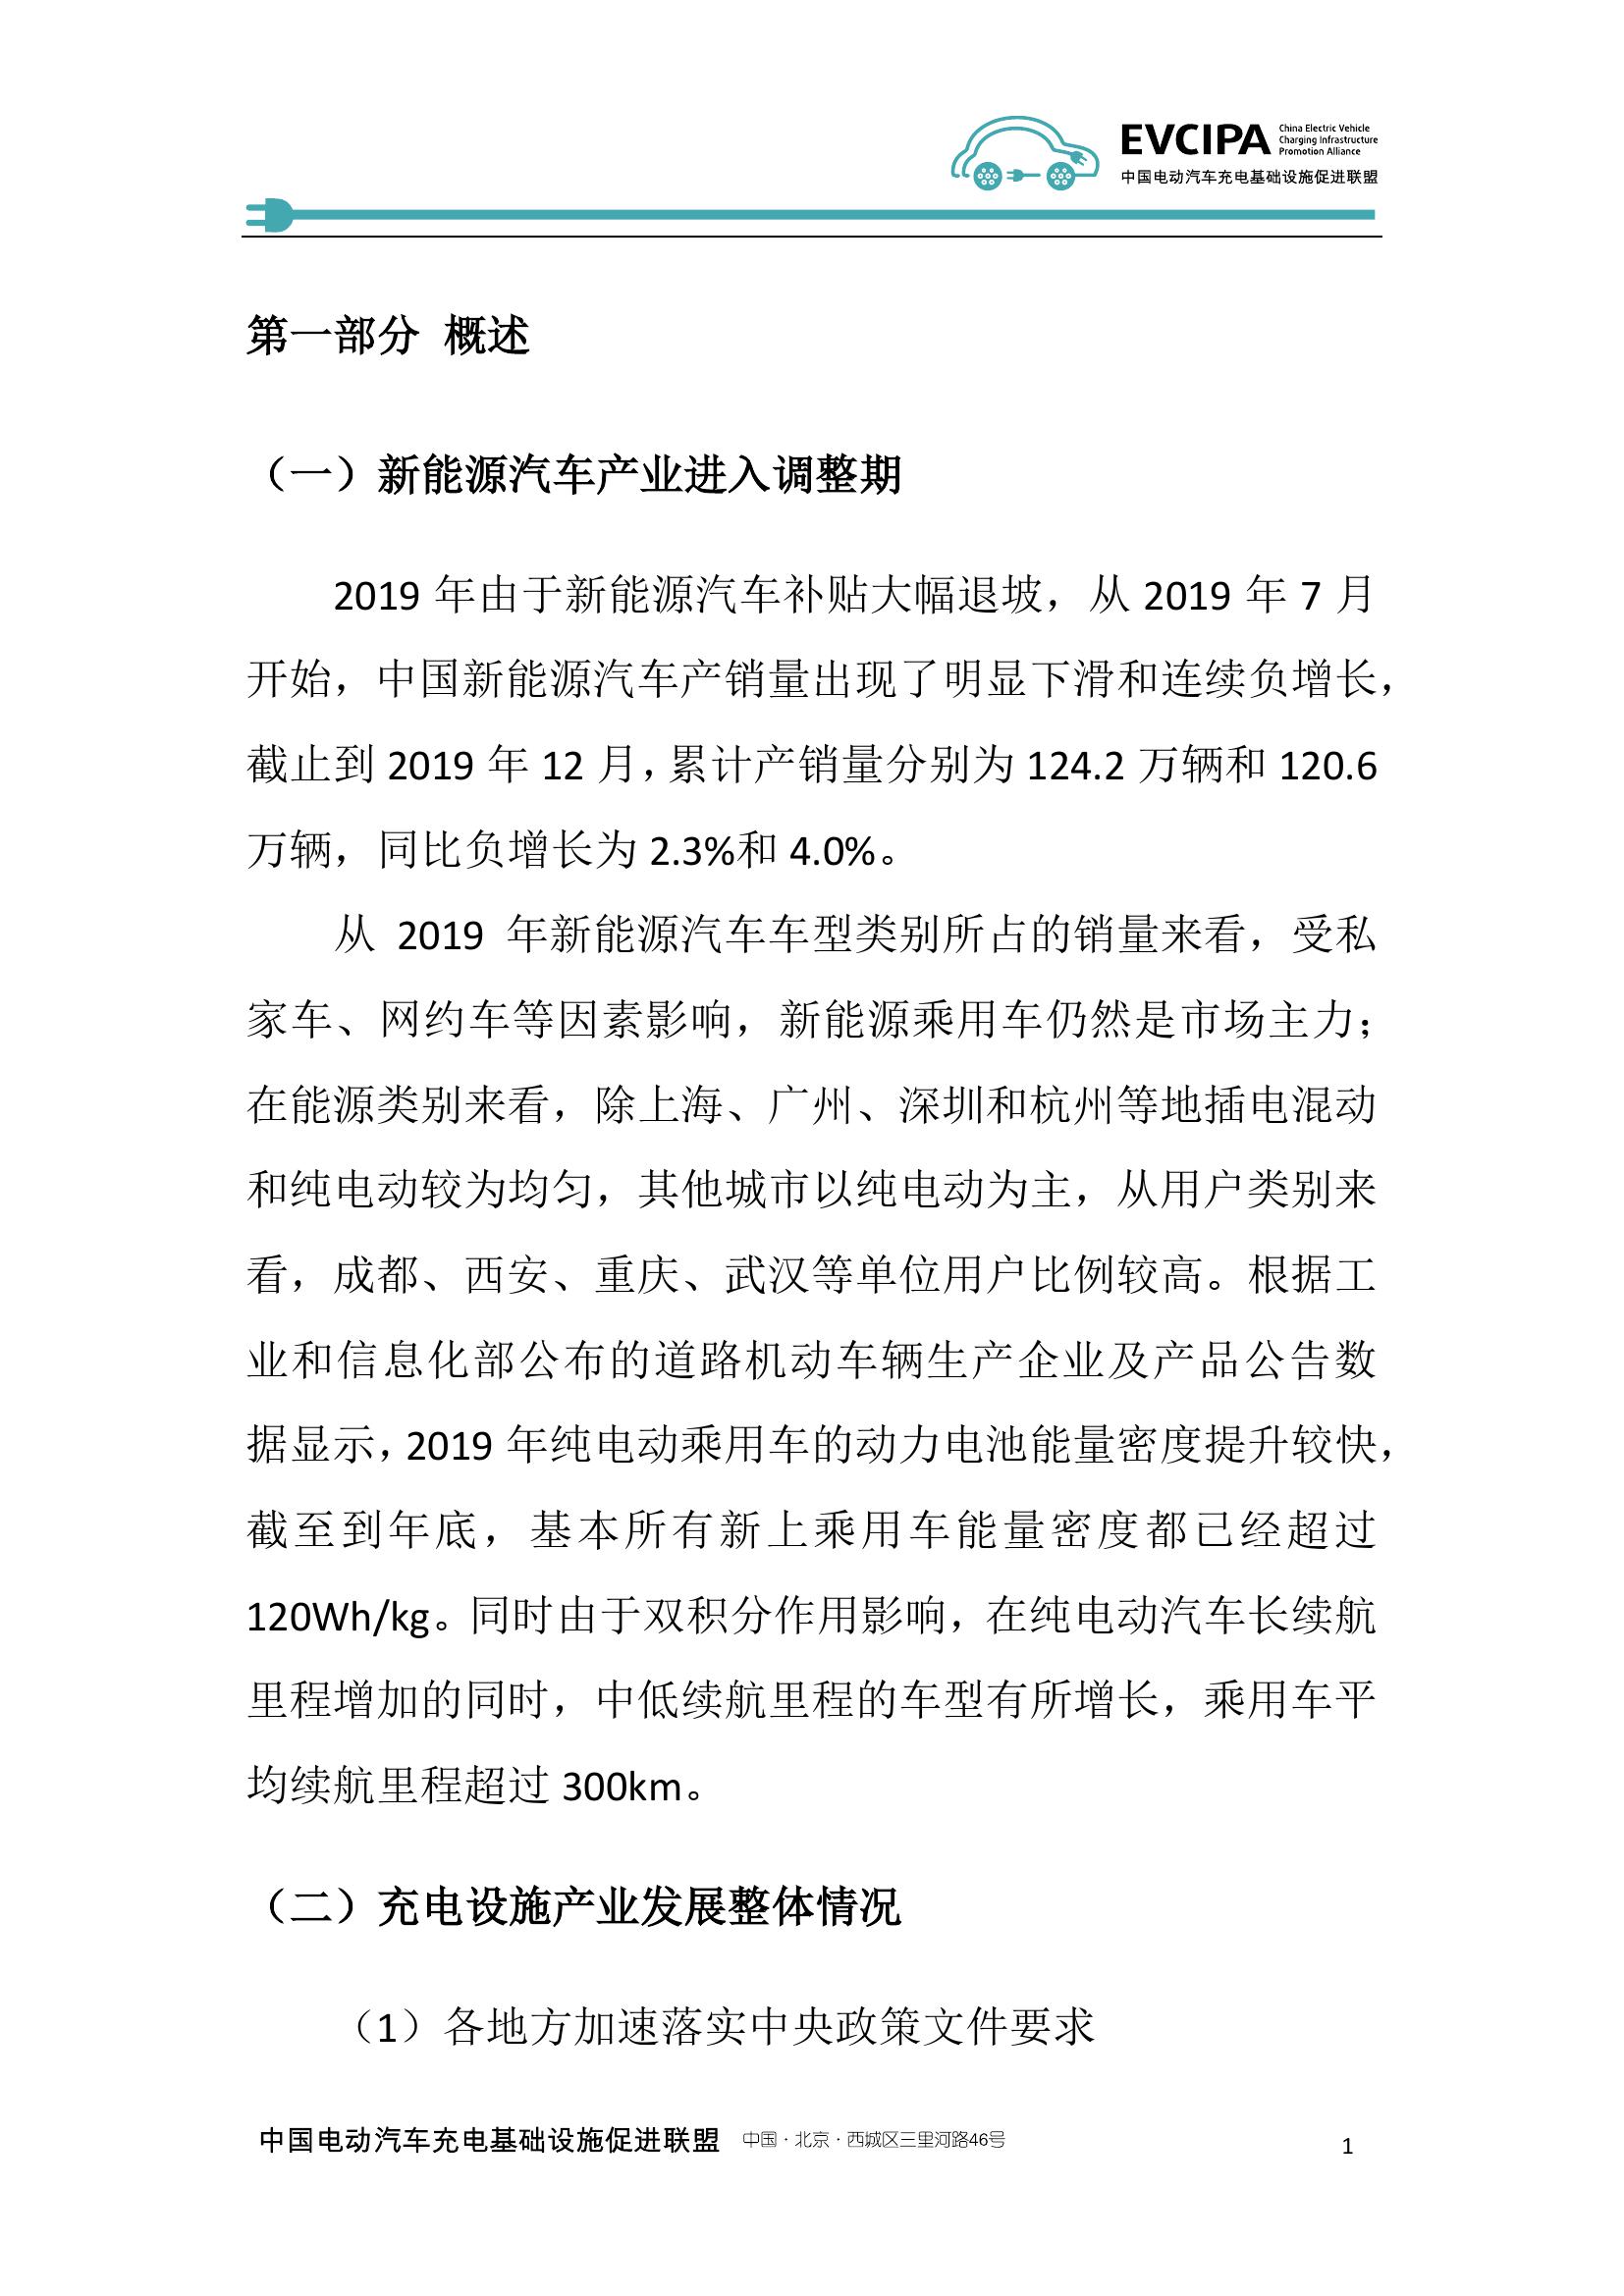 2019-2020年度中国充电基础设施发展报告_000009.jpg